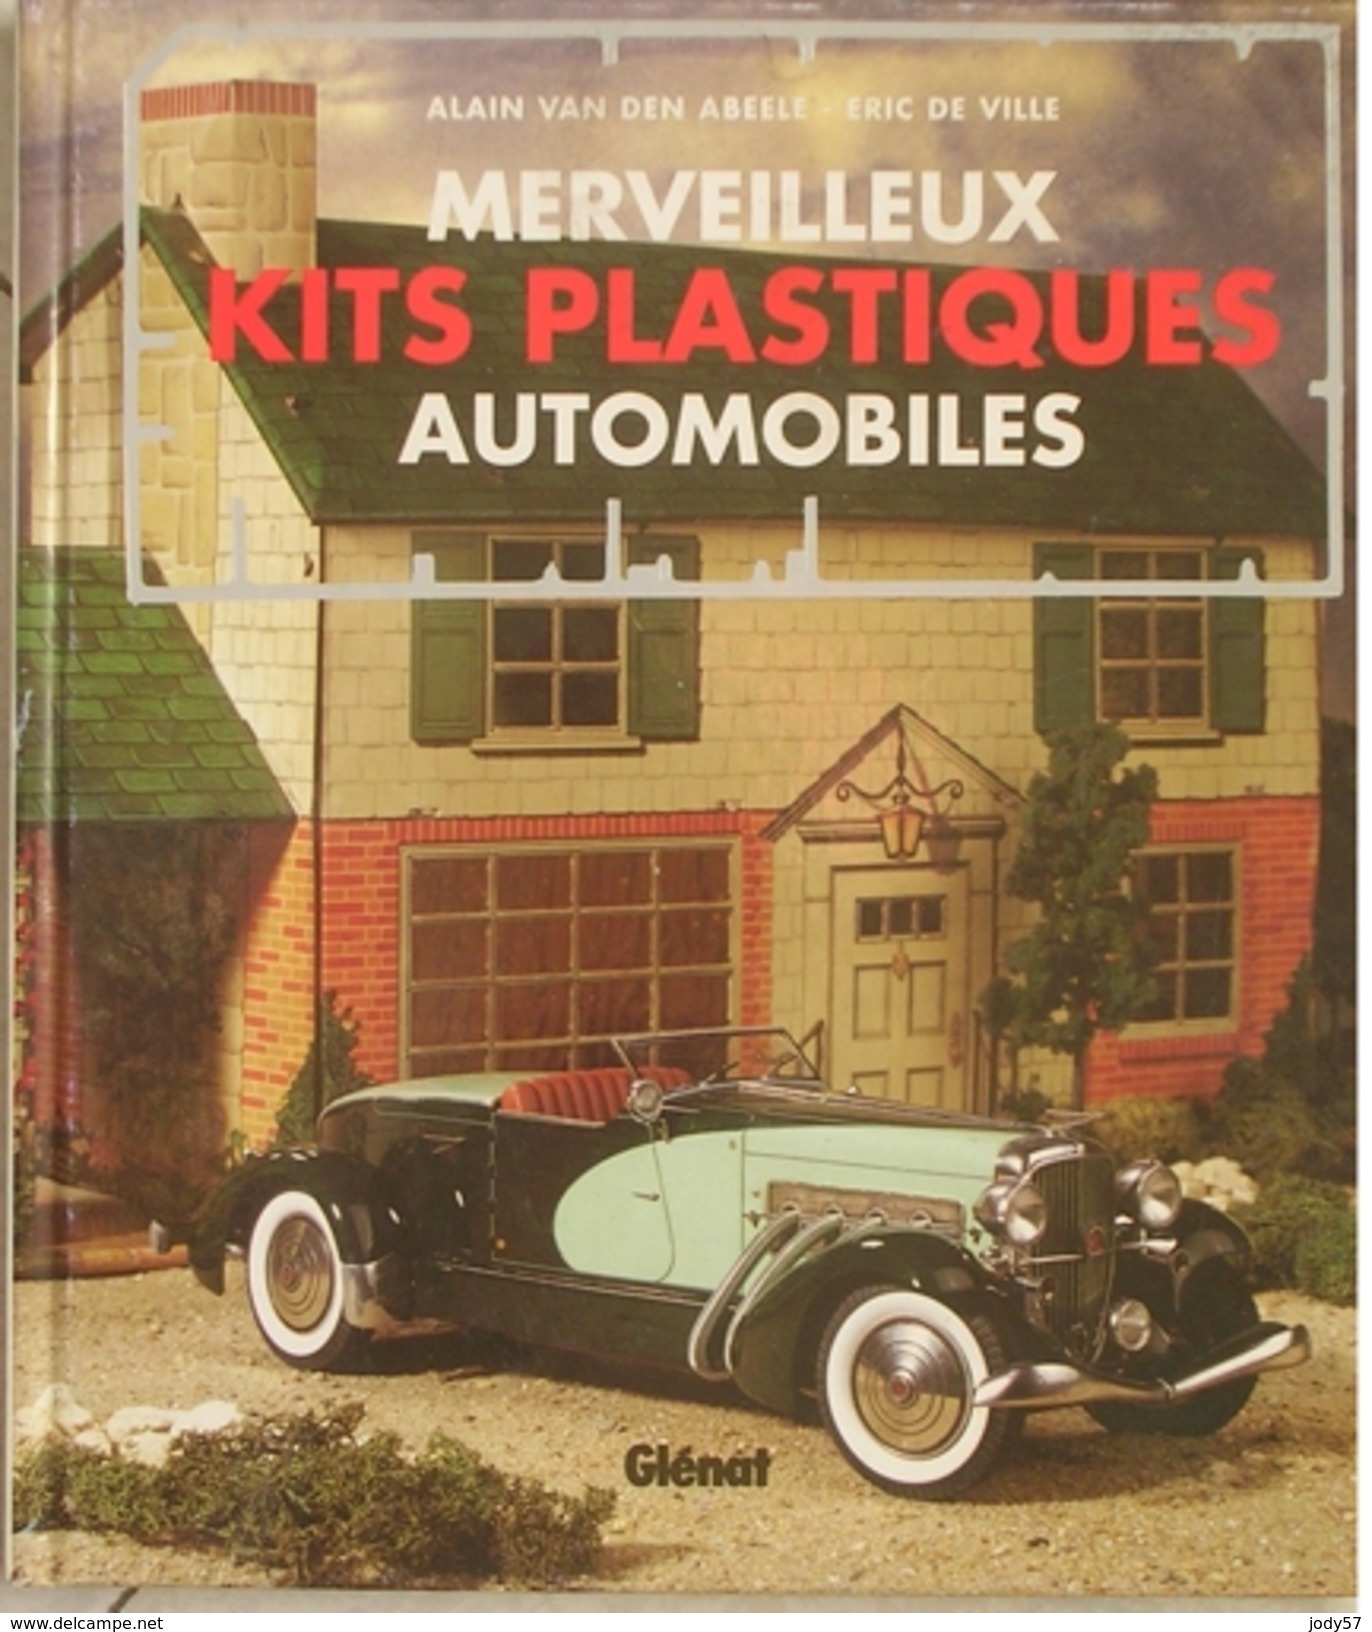 MERVEILLEUX KITS PLASTIQUES AUTOMOBILES - VAN DEN ABEELE - DE VILLE - GLENAT - 1994 - Modellismo